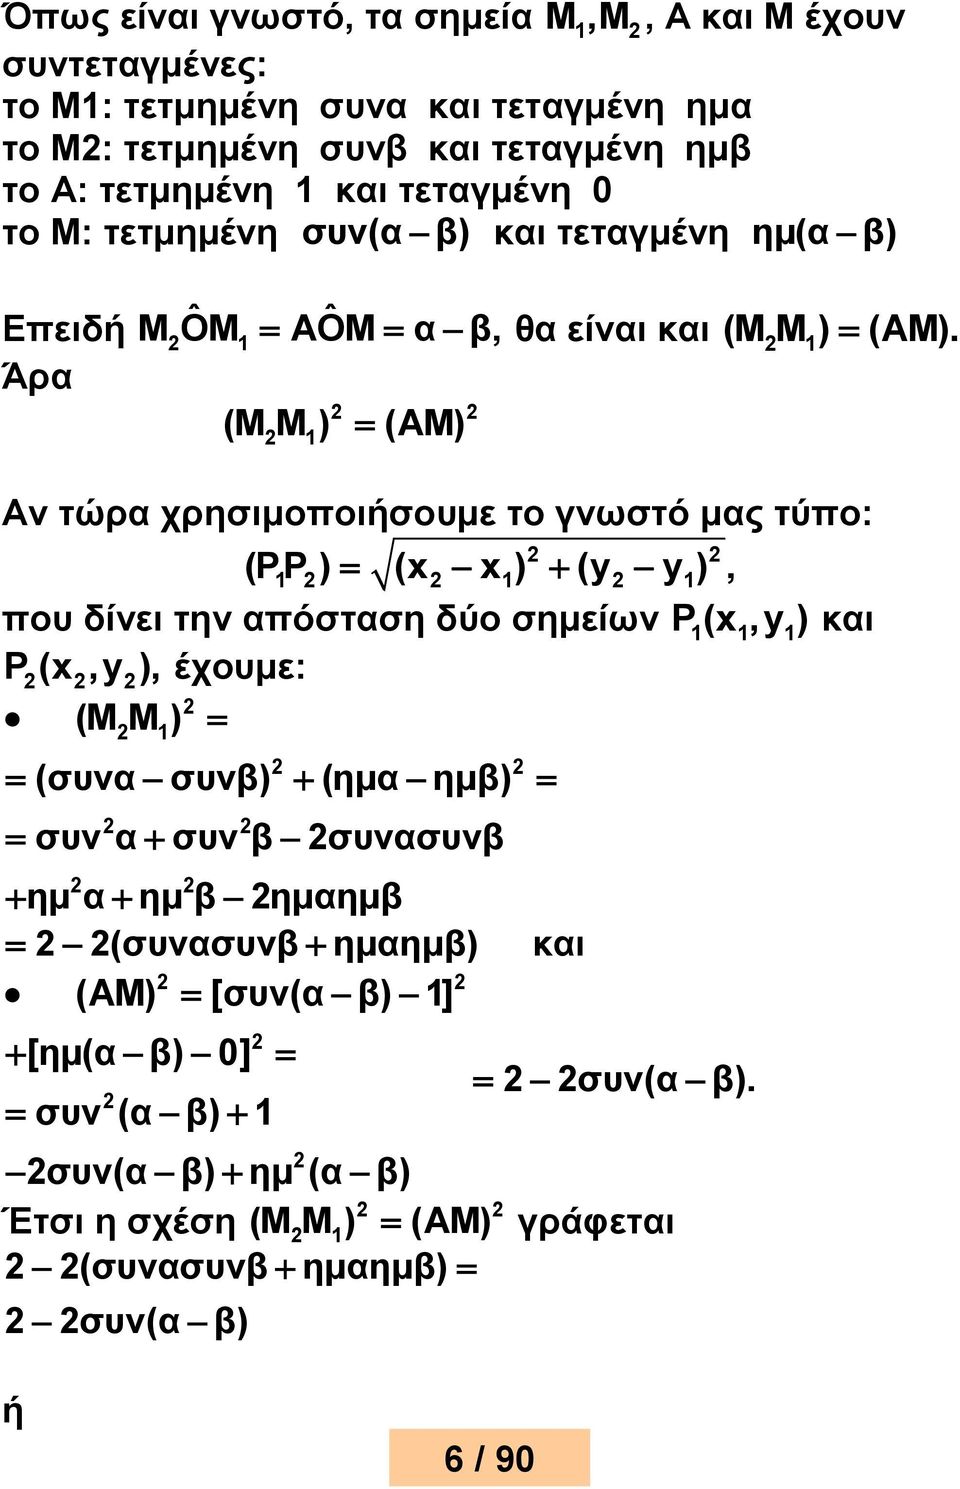 Άρα (M M ) (AM) 1 Αν τώρα χρησιμοοιήσουμε το γνωστό μας τύο: (PP 1 ) (x x 1) (y y 1), ου δίνει την αόσταση δύο σημείων P 1(x 1,y 1) και P (x,y ), έχουμε: (M M ) 1